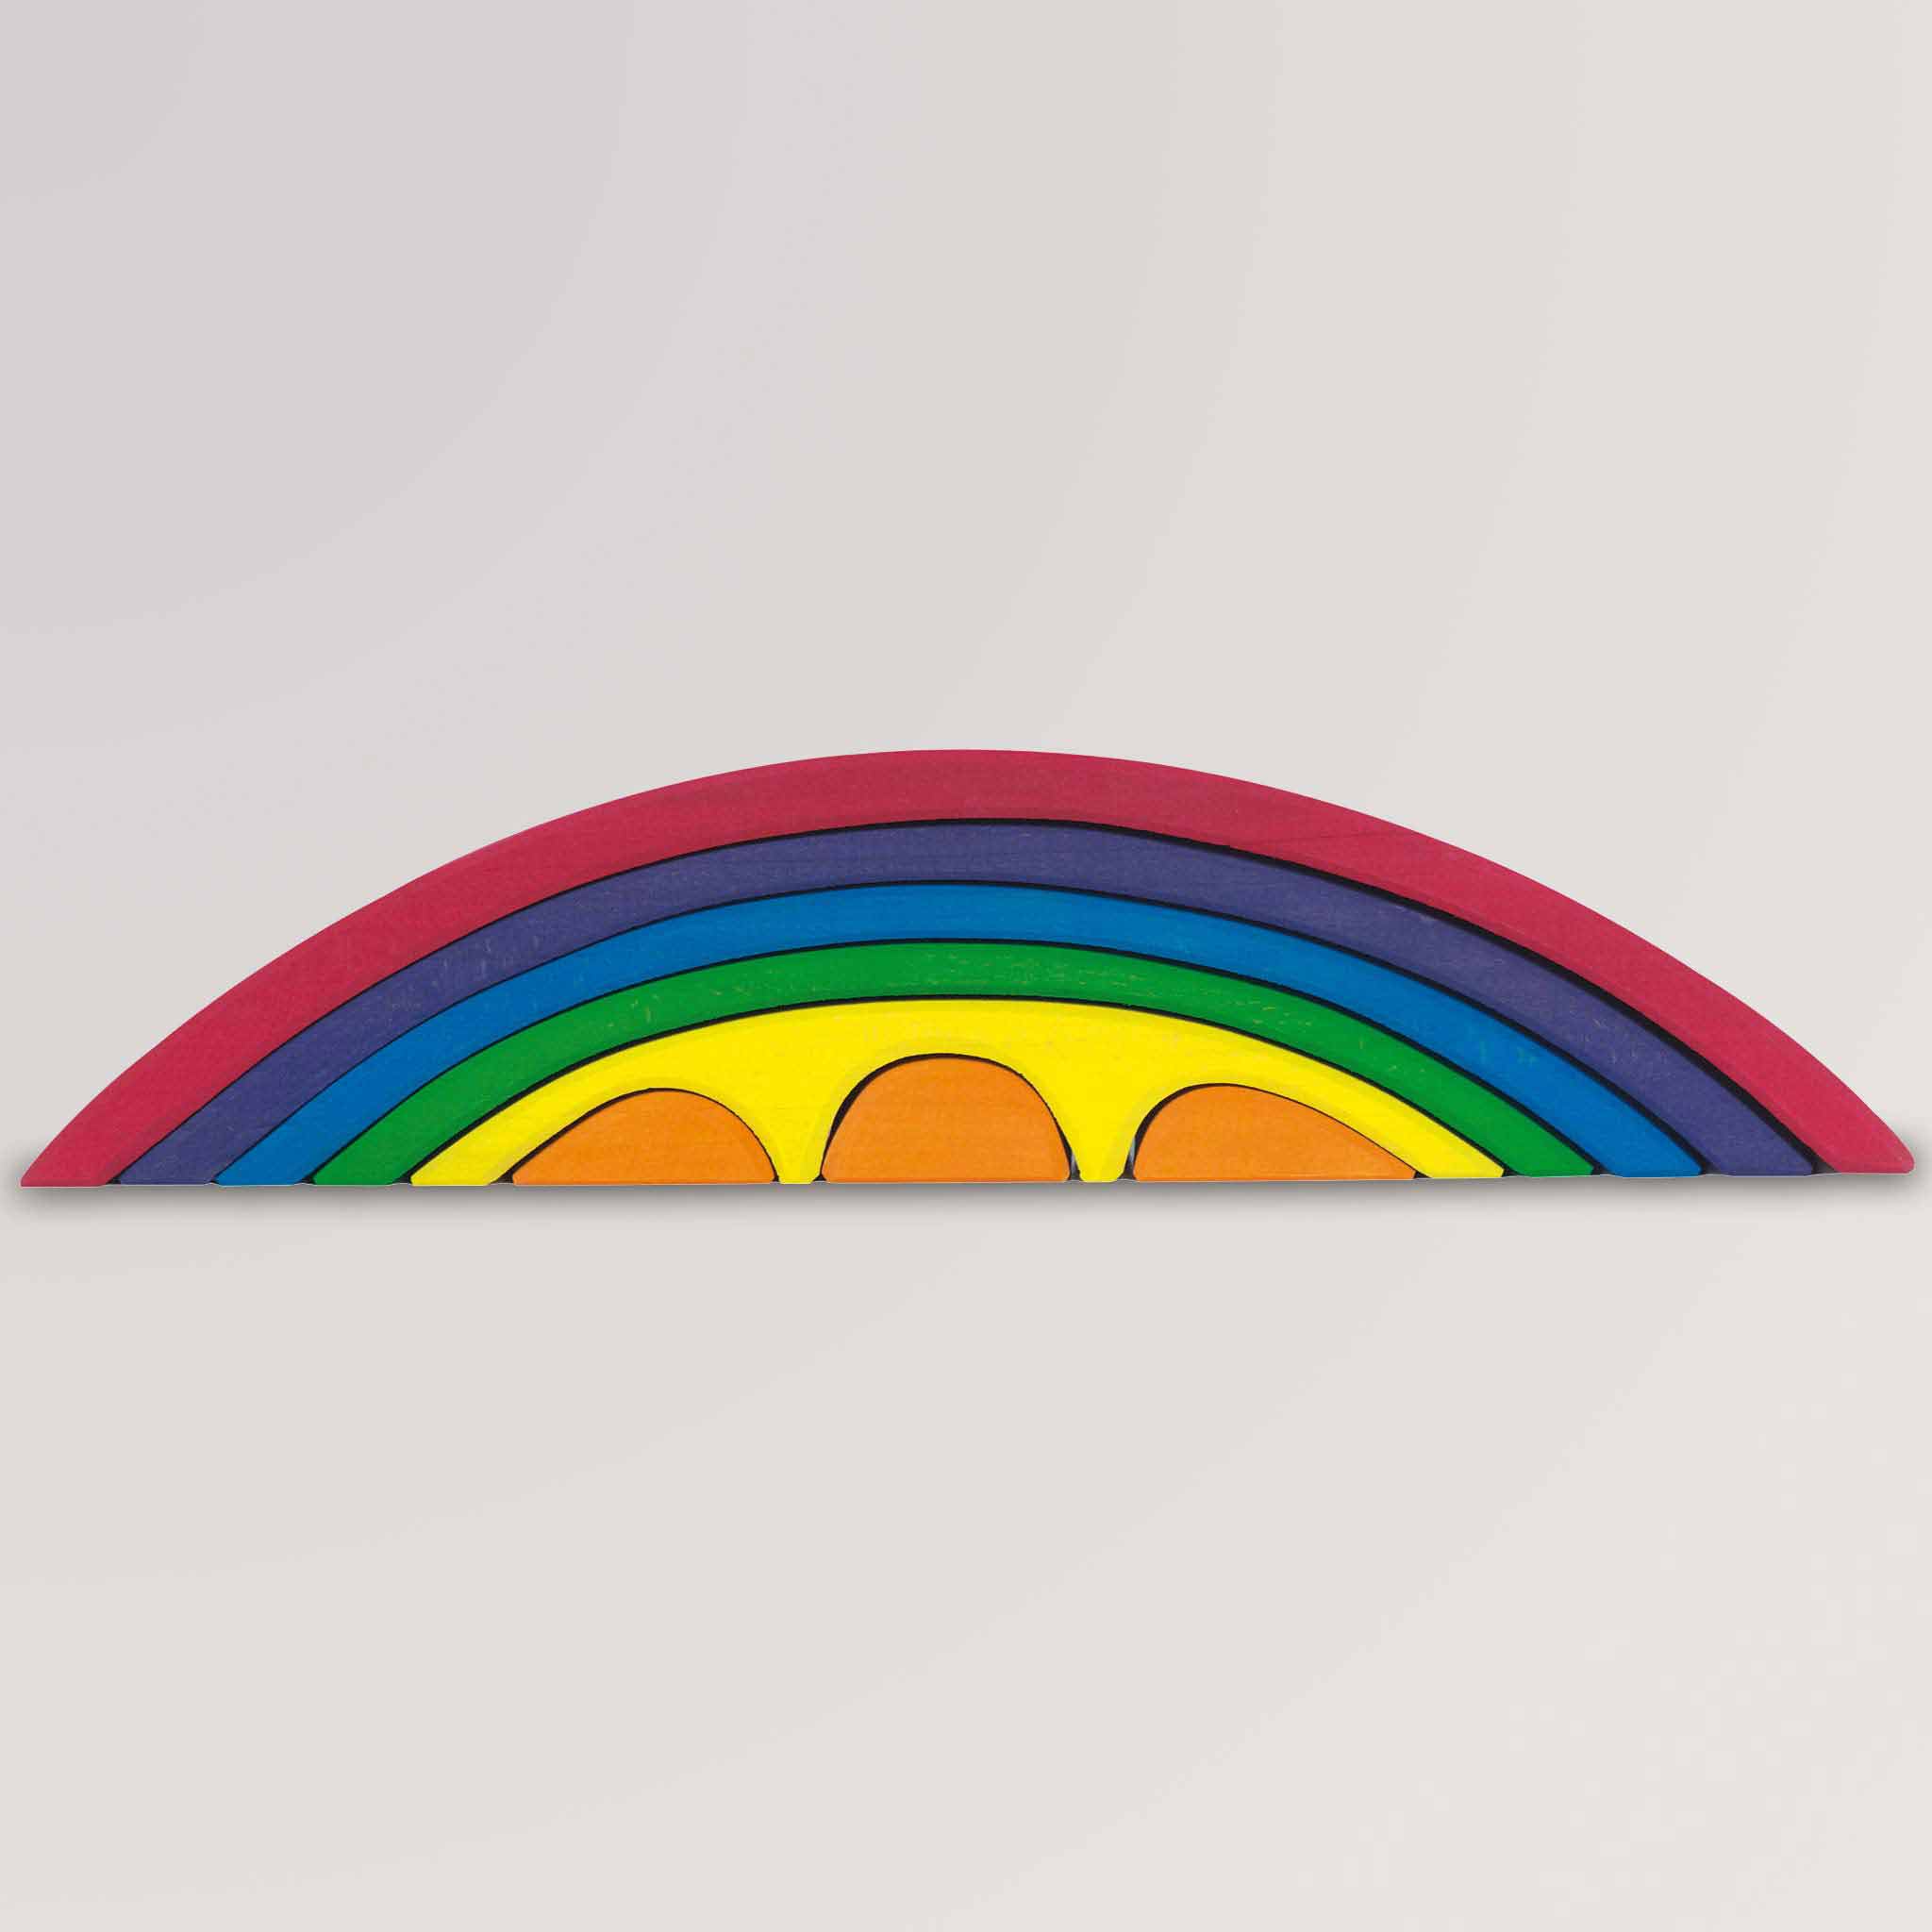 Brückenset, 8-teilig, Regenbogen von Glückskäfer